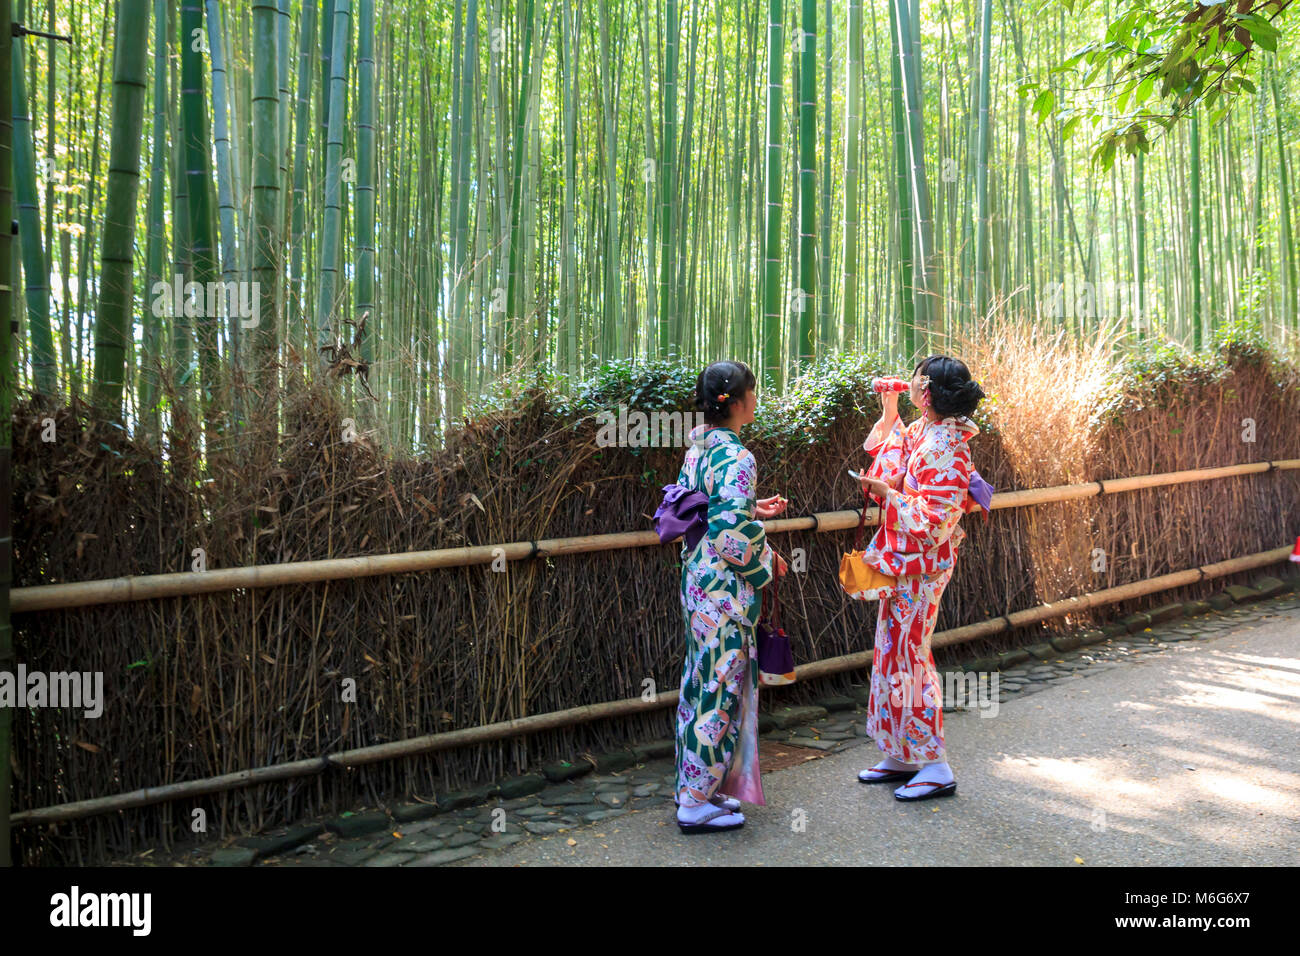 Los japoneses jóvenes mujeres vestidas con kimono tradicional de pie en el bosque de bambú de Arashiyama, Kyoto, Japón Foto de stock